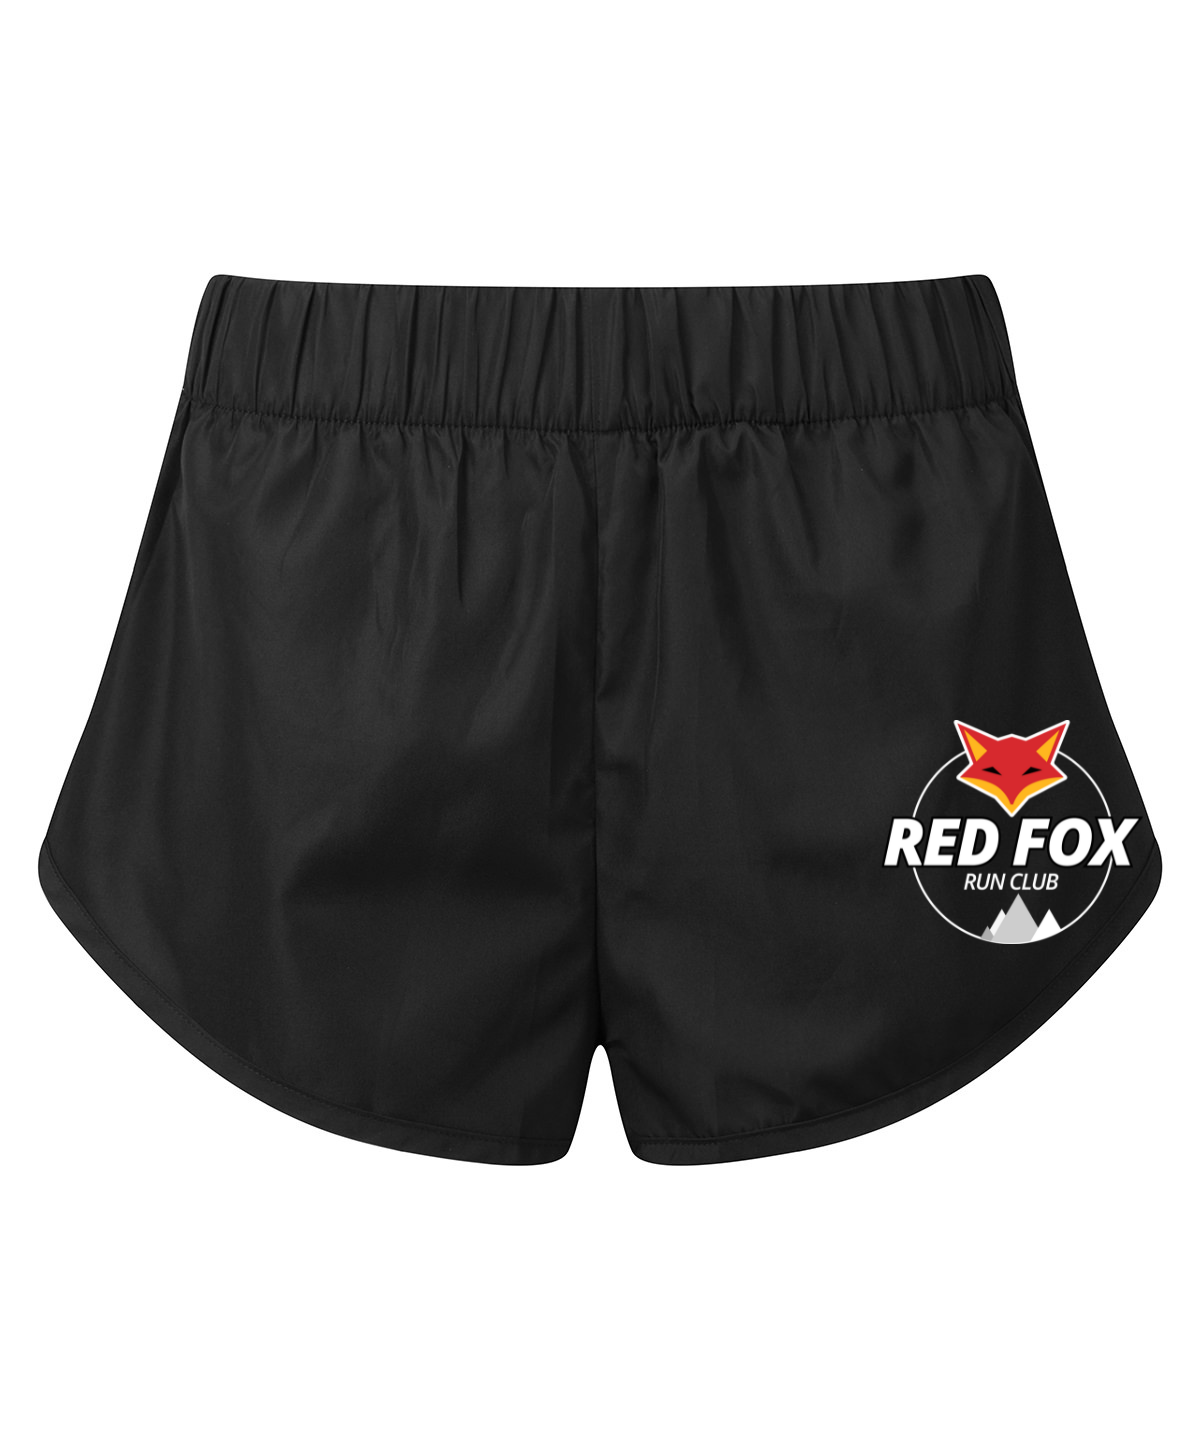 Red Fox Run Club Women’s Running Shorts